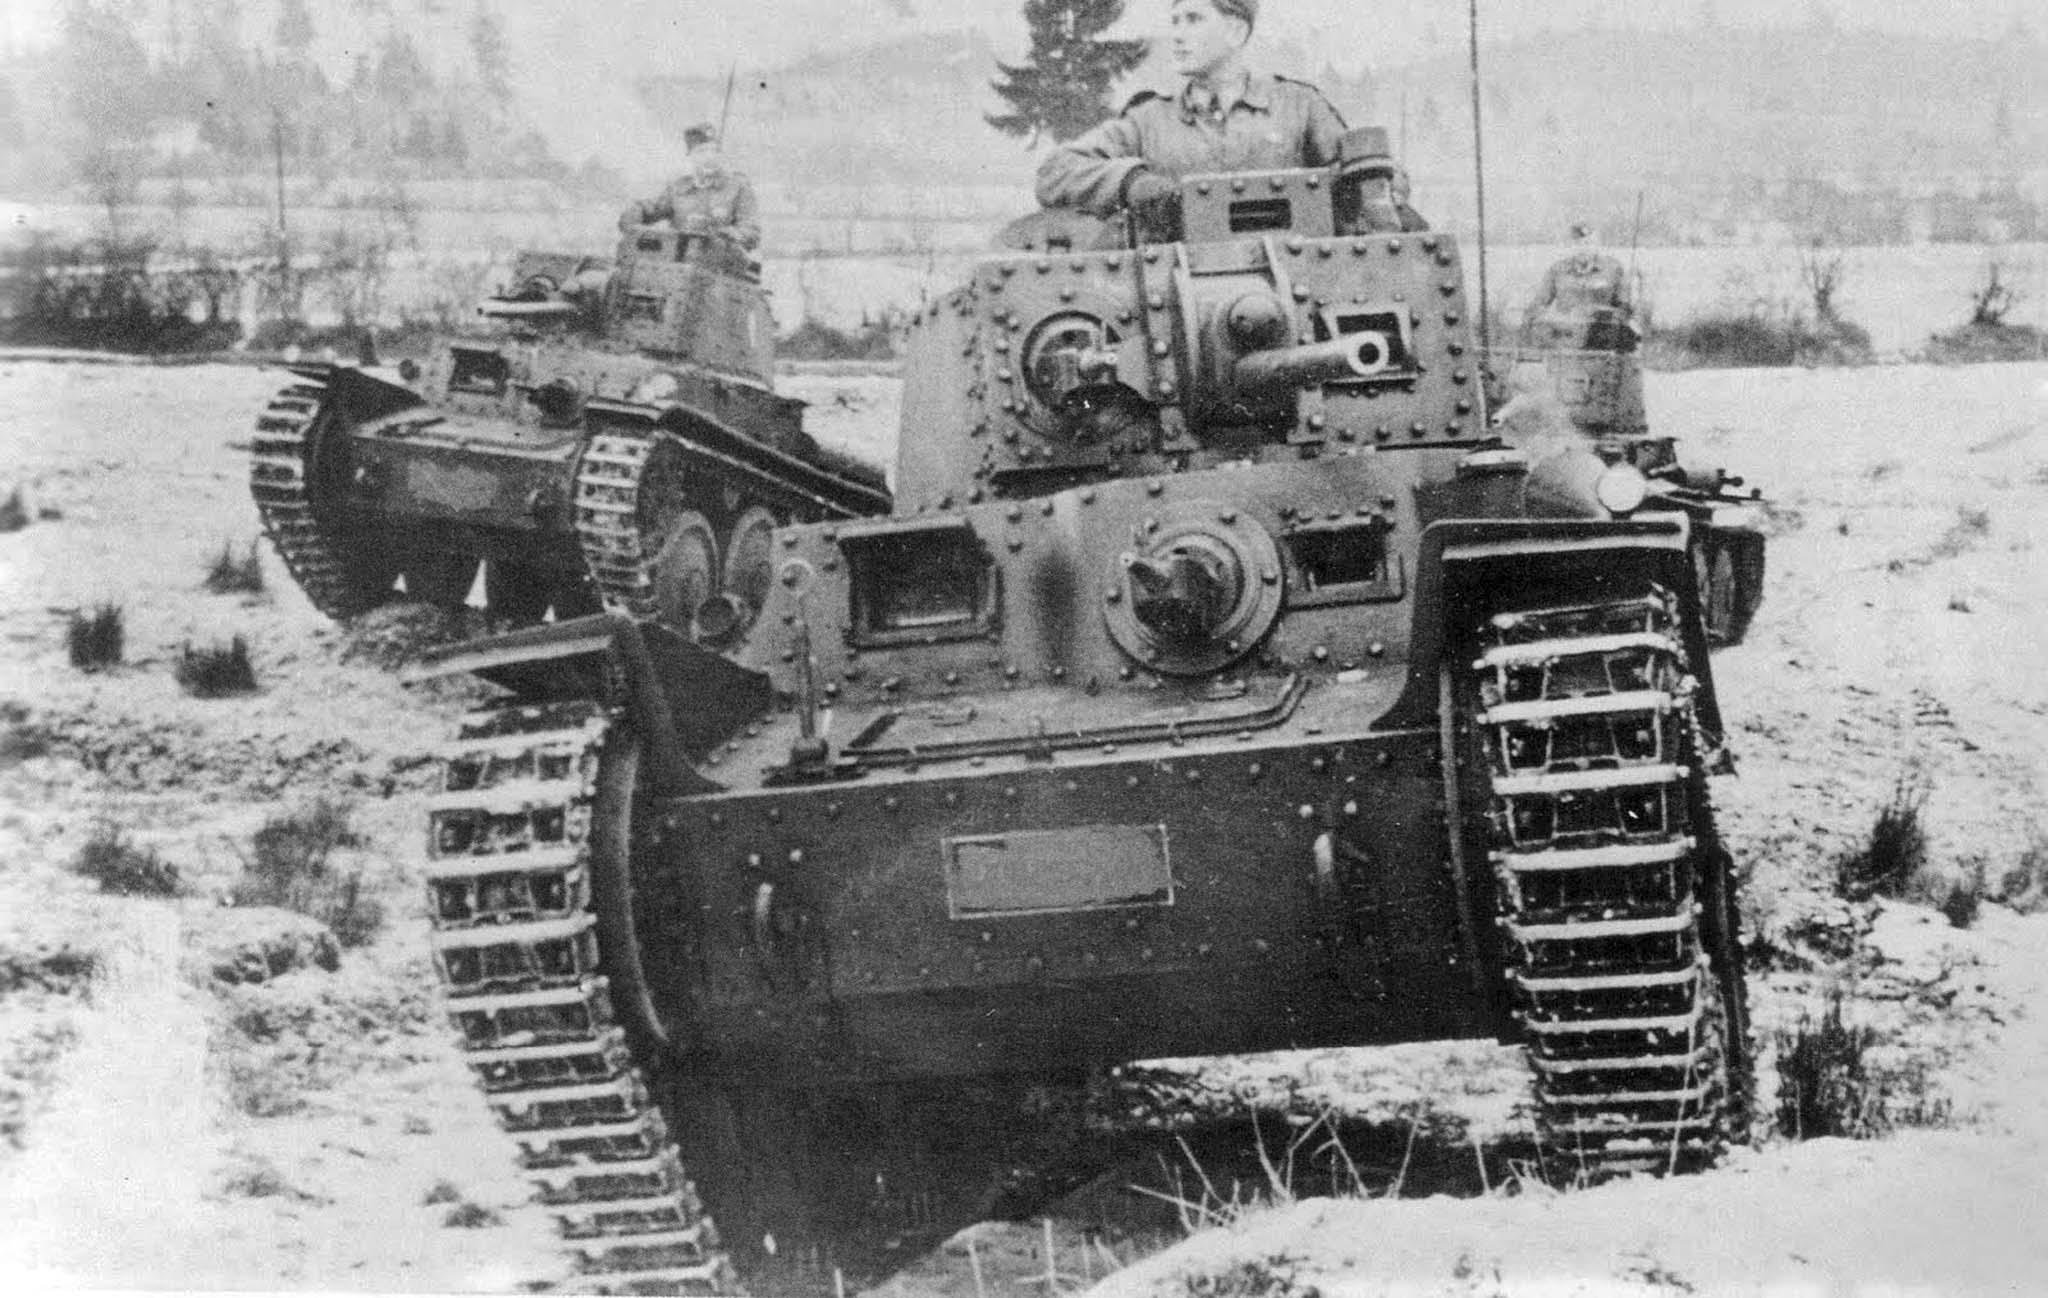 Названия танков вермахта. Pz38t 1941. Lt vz.38 танки Германии периода второй мировой войны. 38 Т танк немецкий. Т38 танк вермахта.